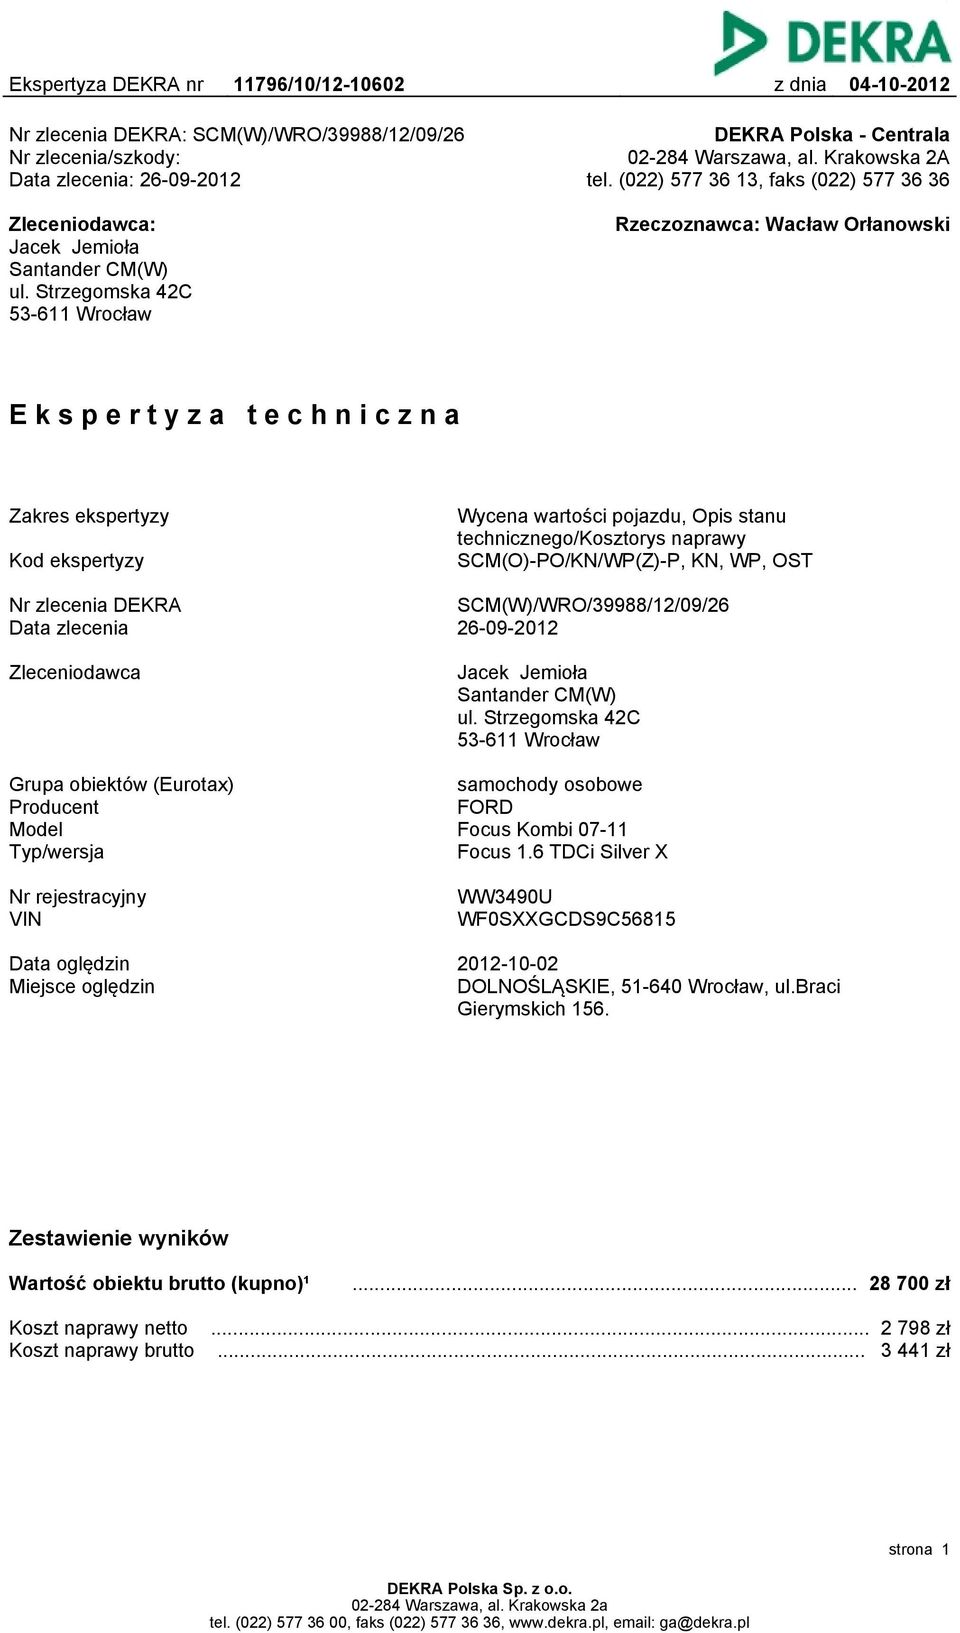 (022) 577 36 13, faks (022) 577 36 36 Rzeczoznawca: Wacław Orłanowski Ekspertyza techniczna Zakres ekspertyzy Kod ekspertyzy Wycena wartości pojazdu, Opis stanu technicznego/kosztorys naprawy